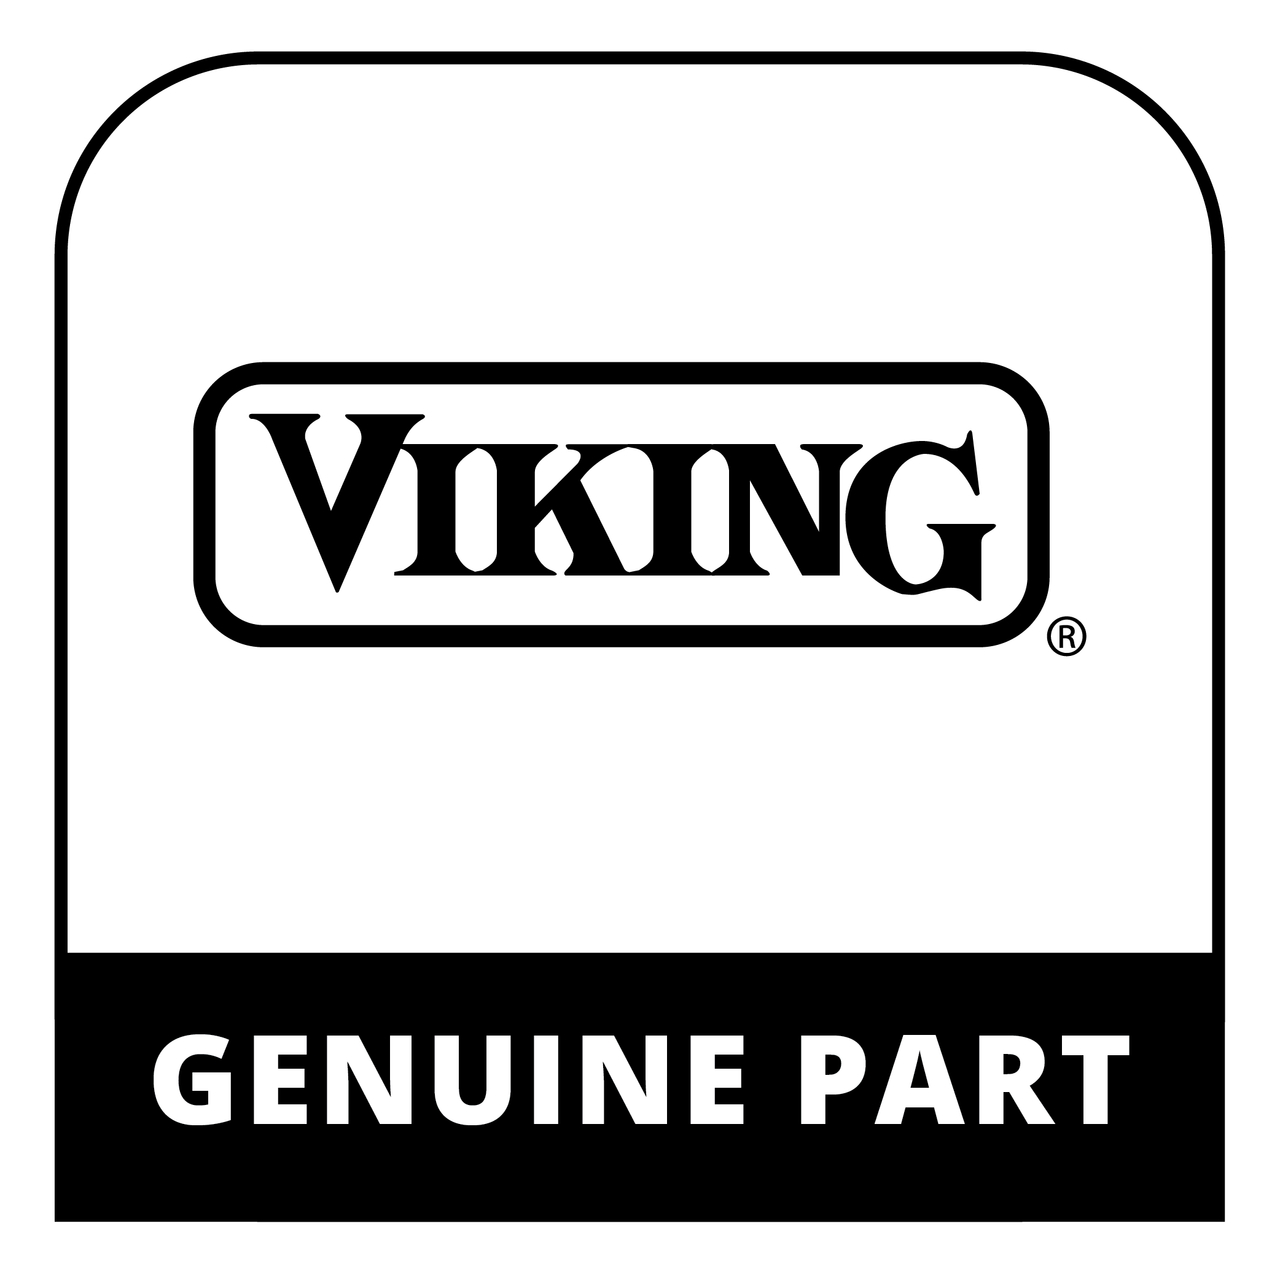 Viking 066178-000 - Head, Burner, B - Genuine Viking Part